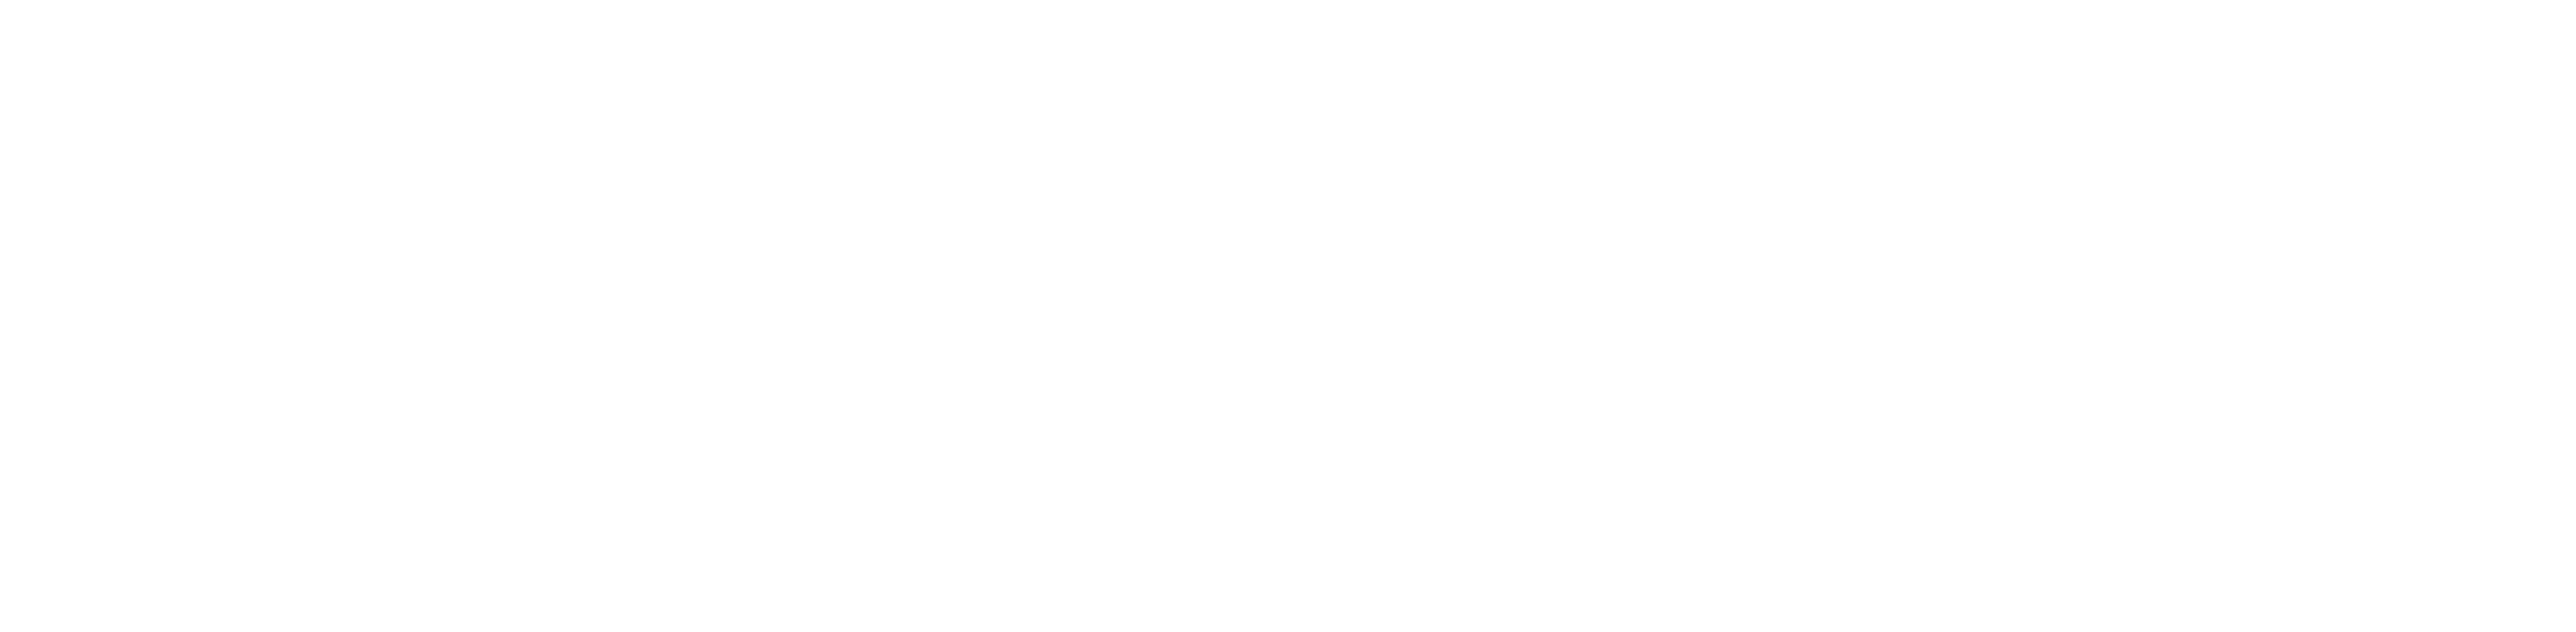 ORTC Help Centre logo